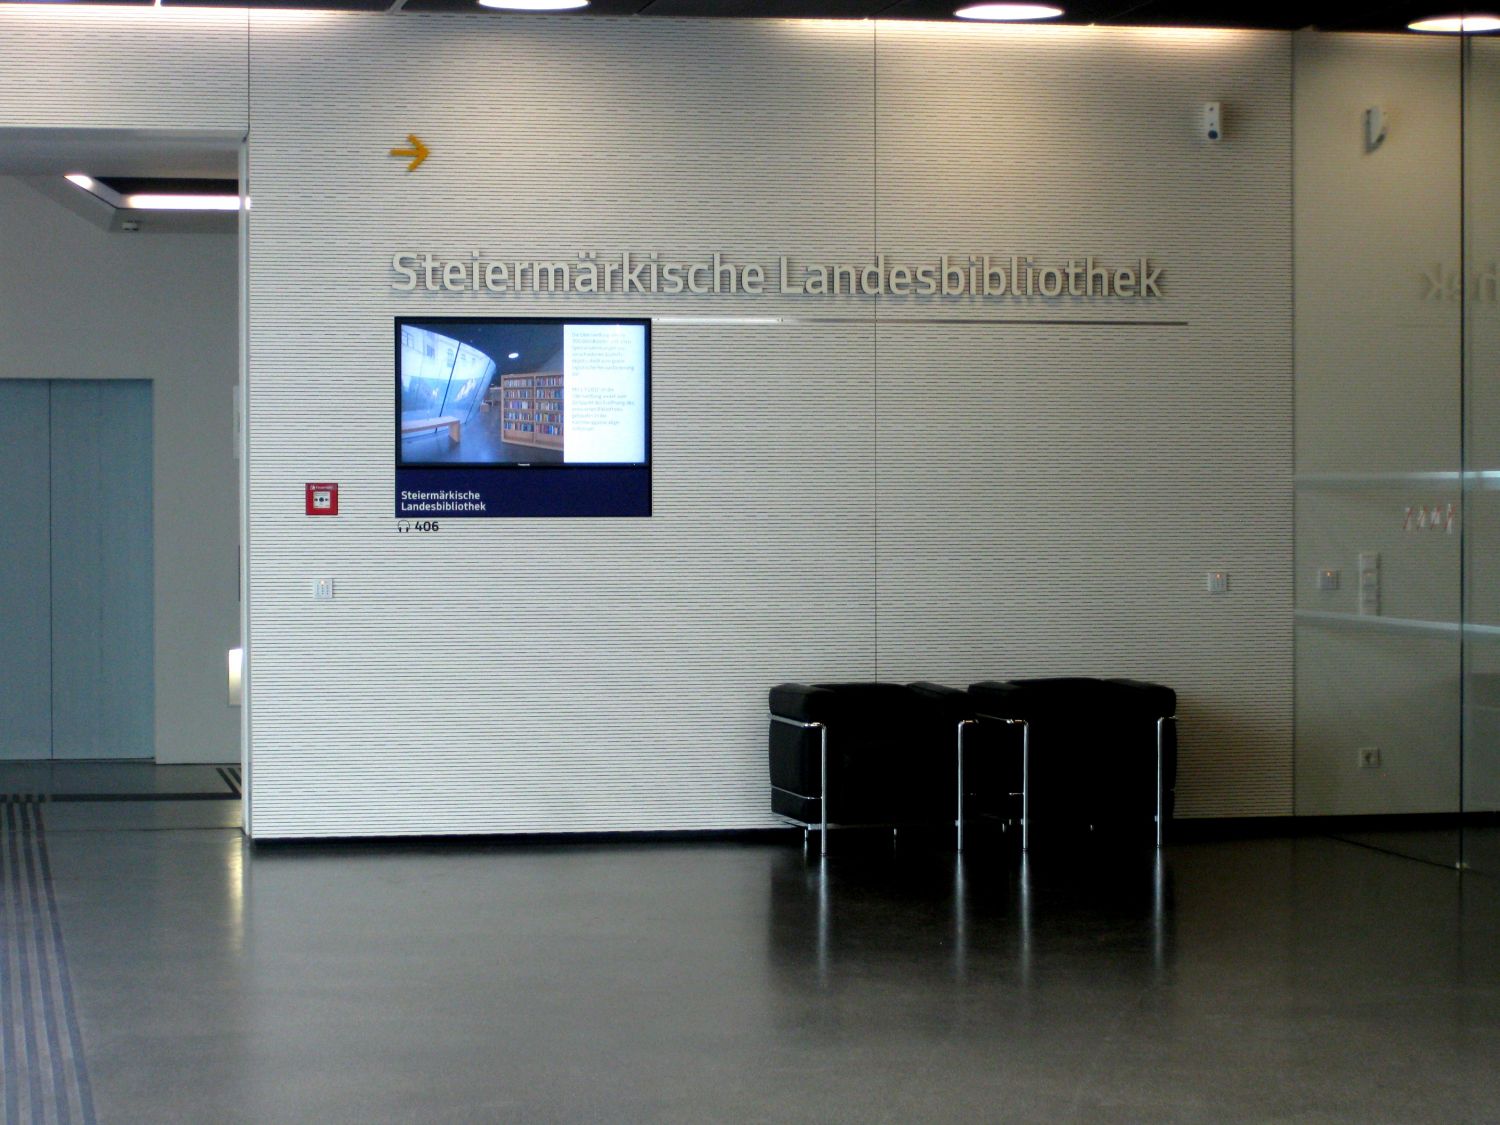 Steiermärkische Landesbibliothek- Joanneum